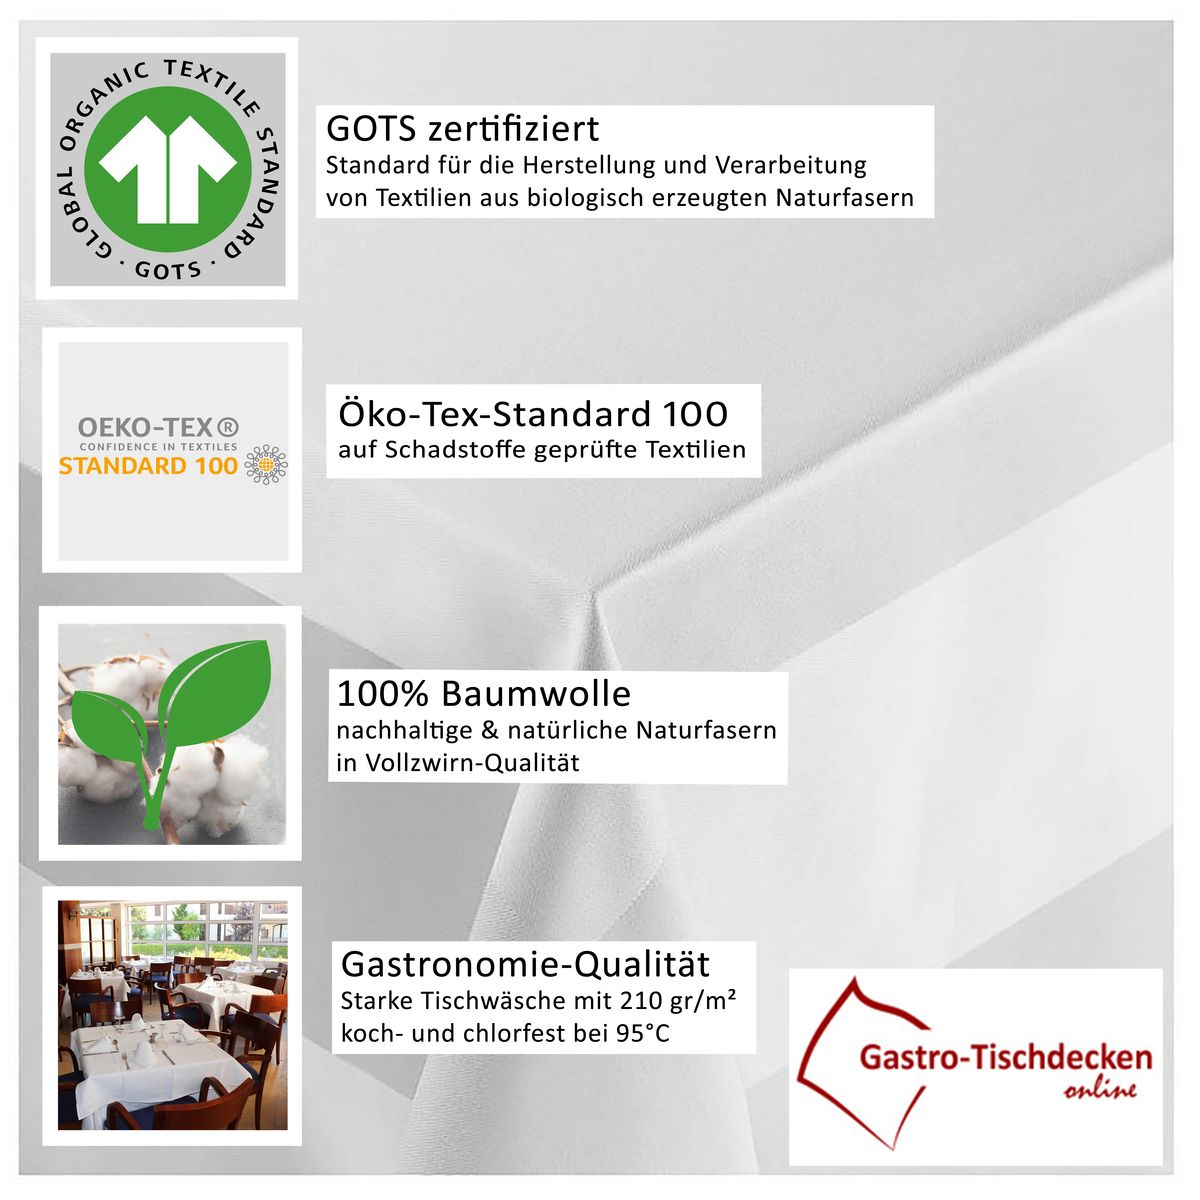 GOTS-zertifiziert & nach ÖKO-Tex-Standard produziert